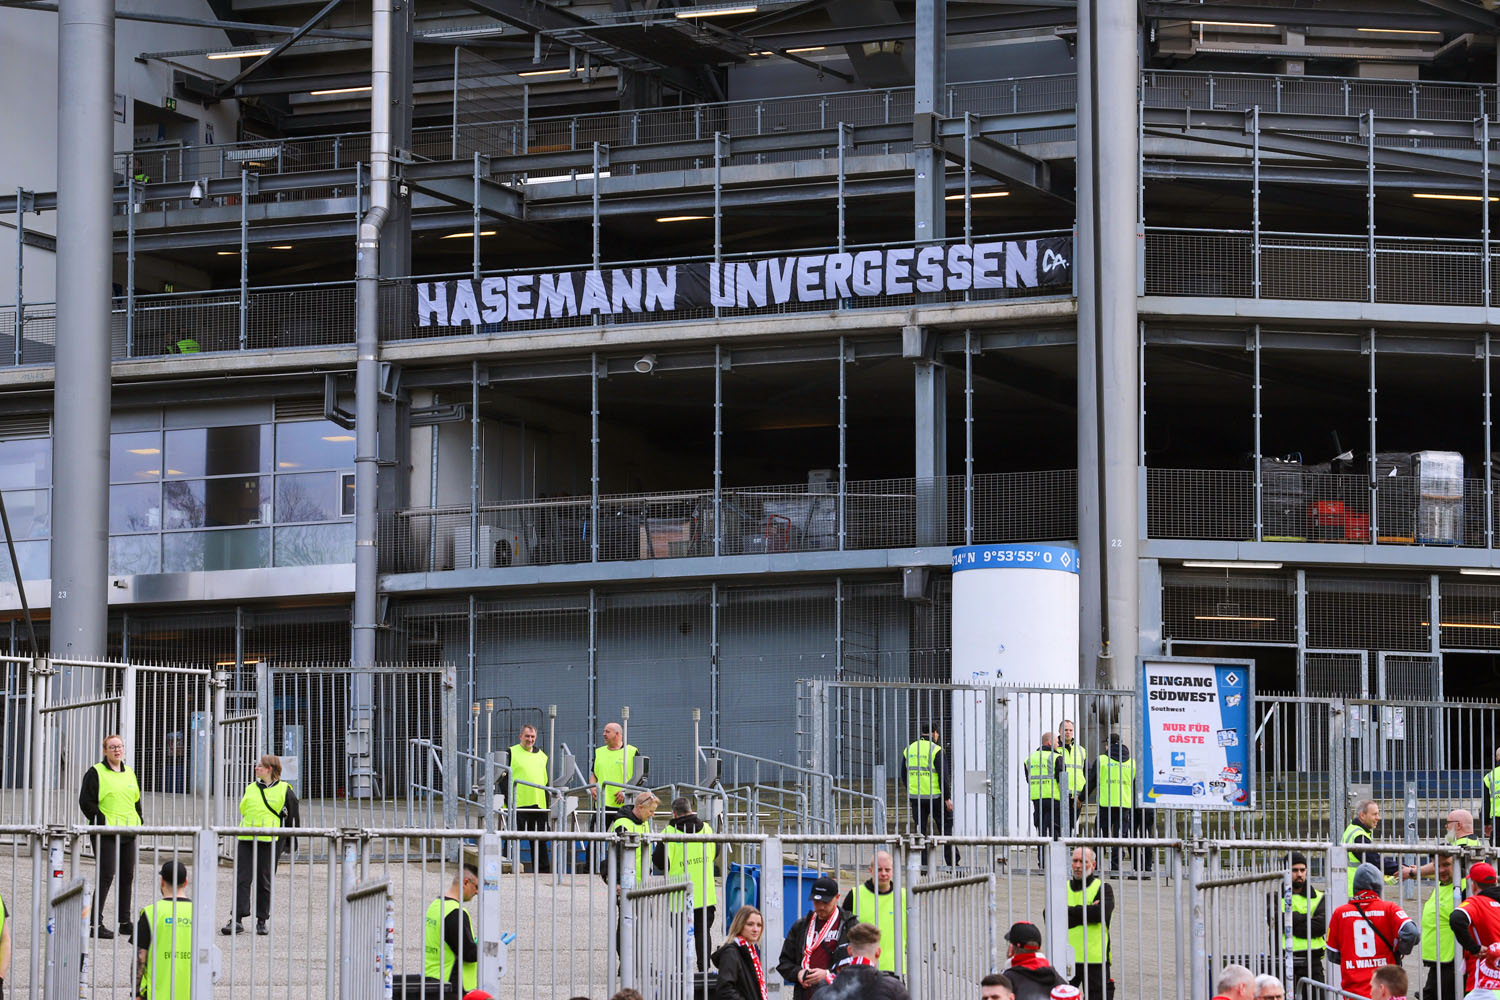 Spruchband der HSV-Fans am Gäste-Eingang: Hasemann unvergessen